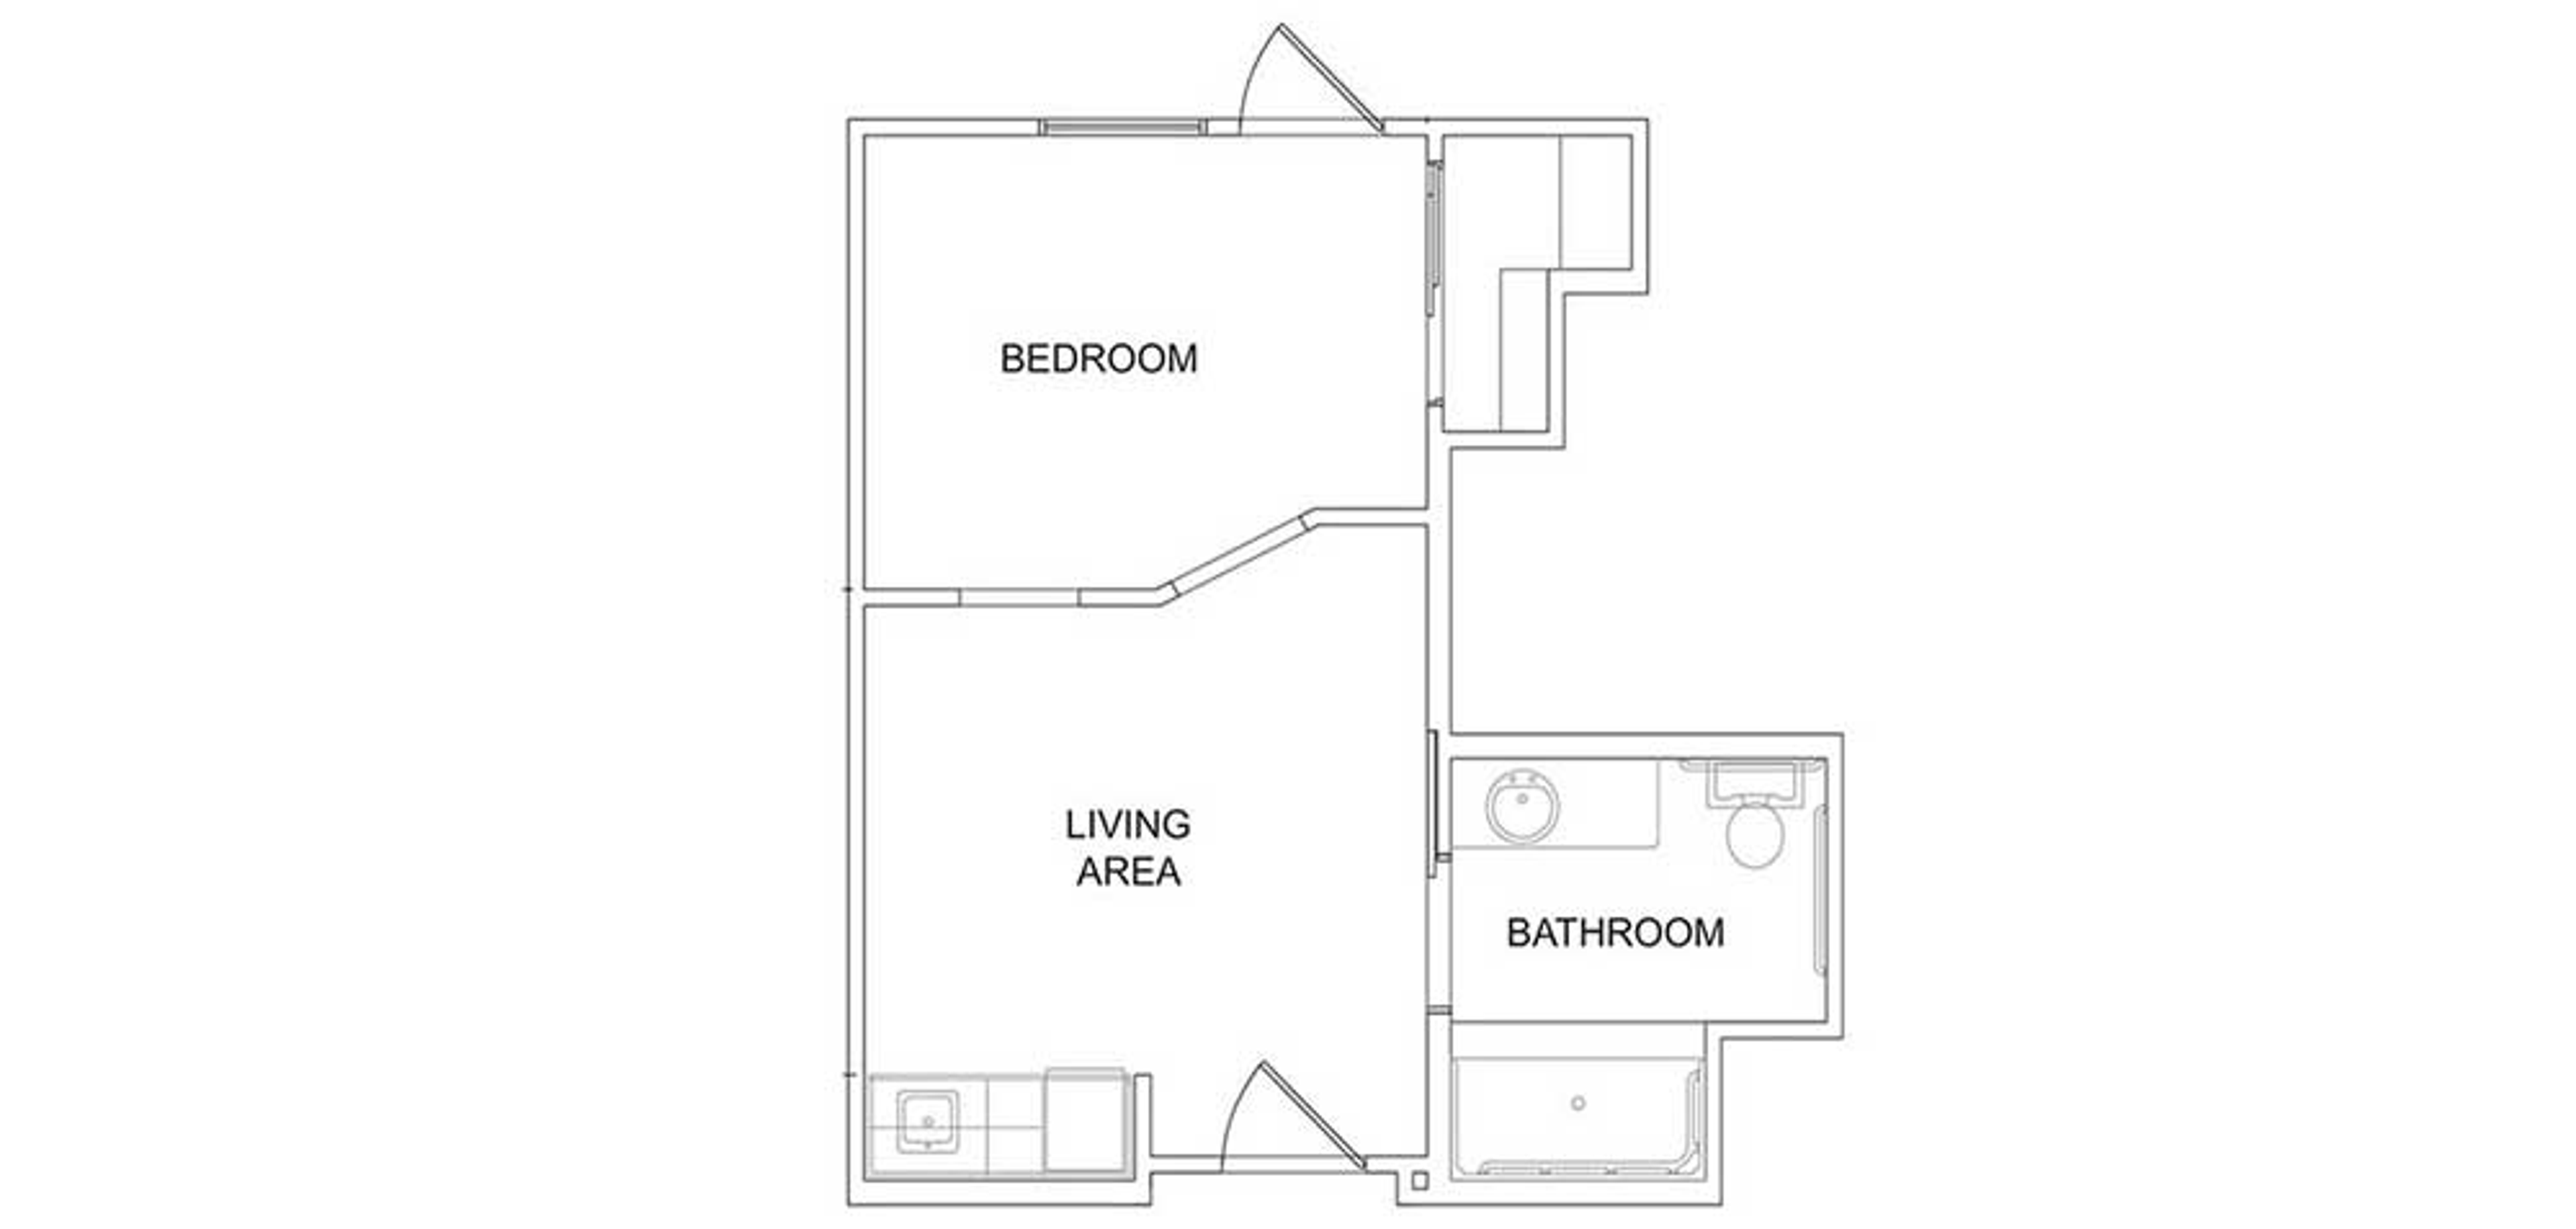 Floorplan - Martin Crest - 1B 1B Courtyard